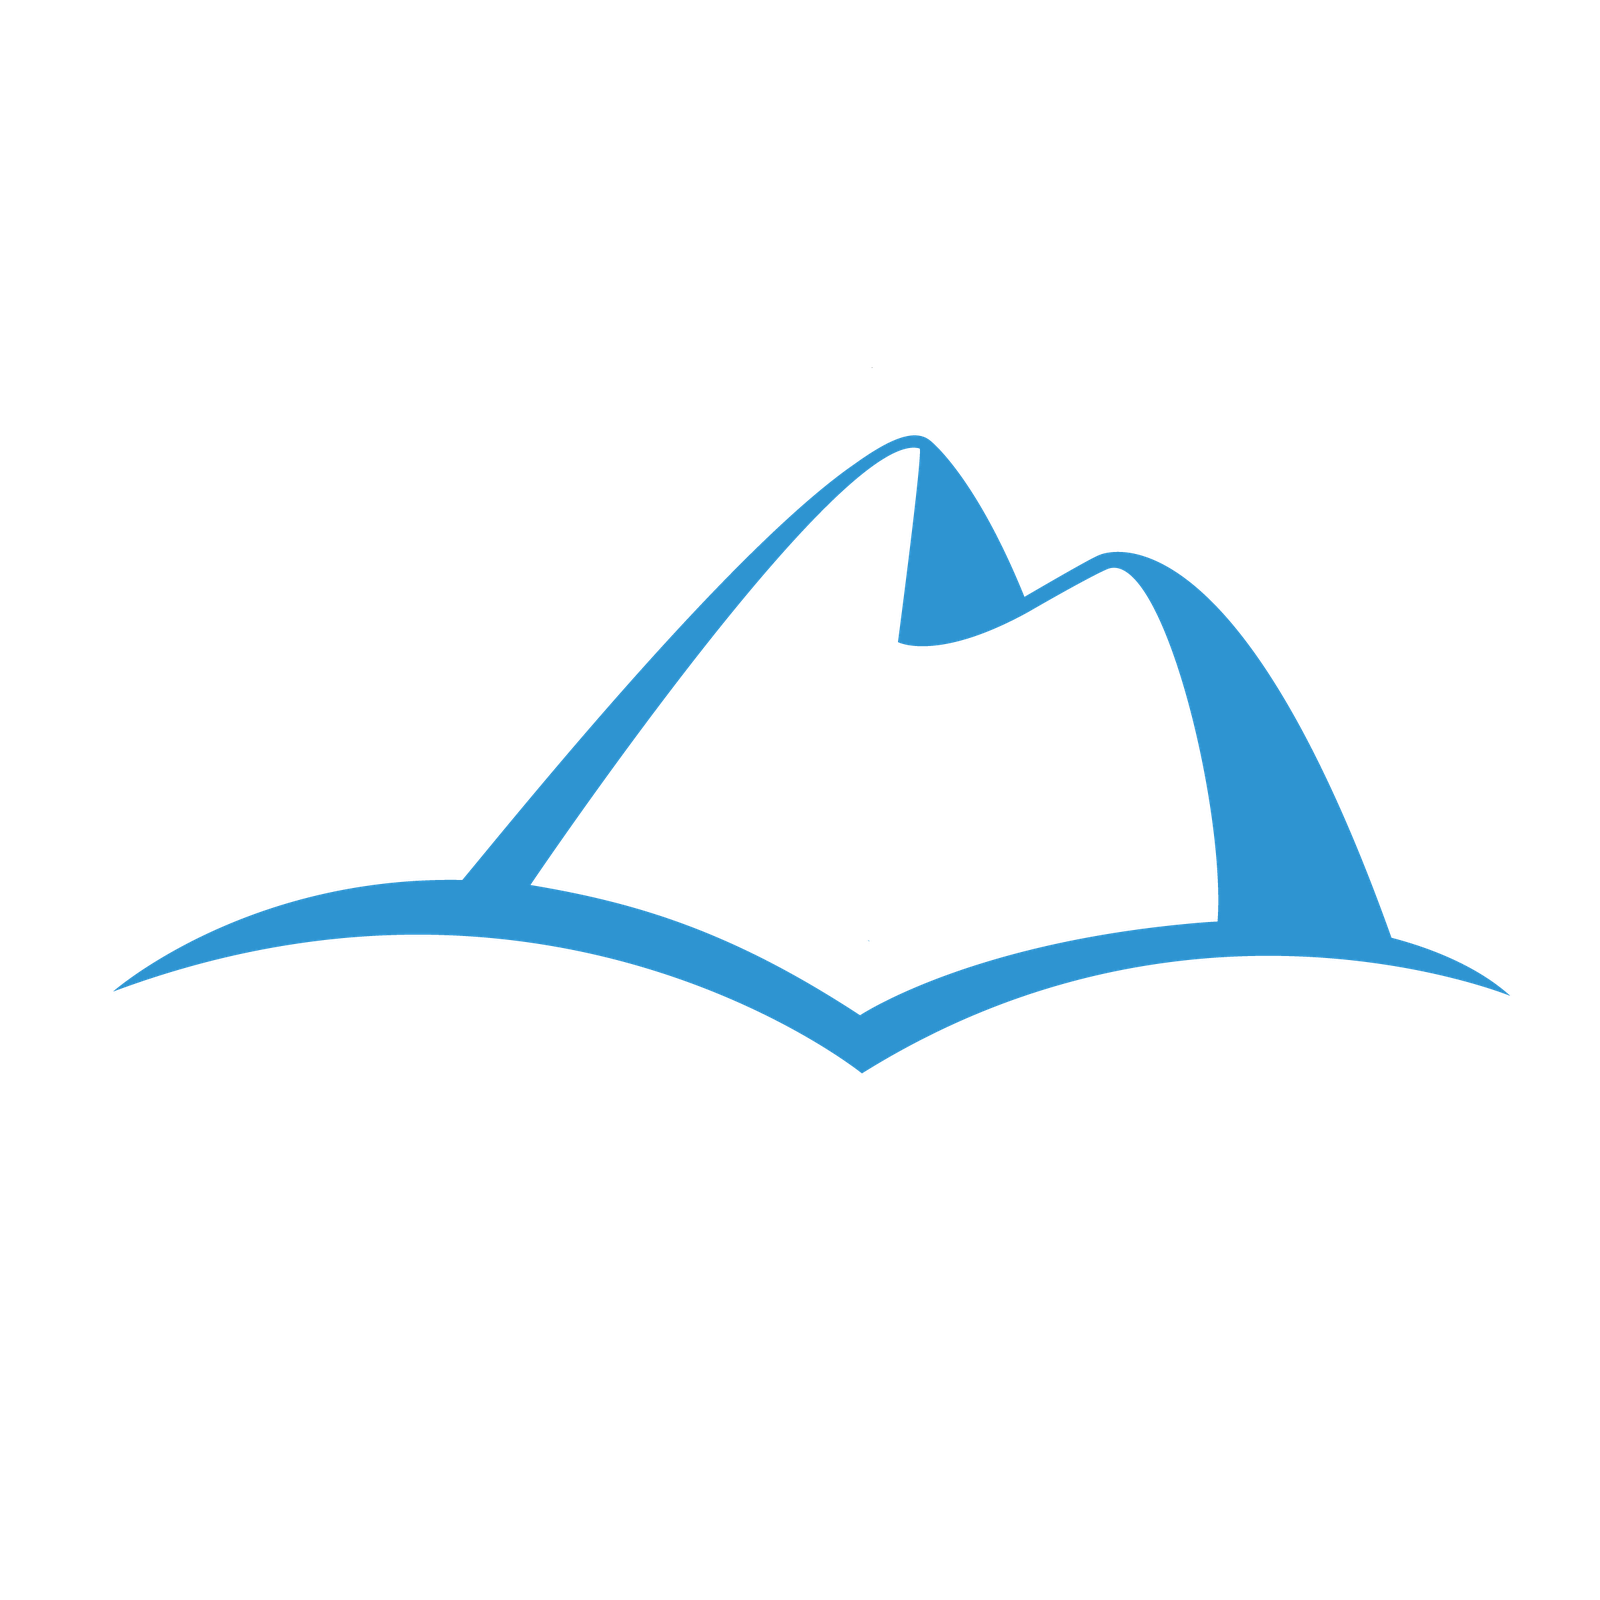 3 Mountain Logo - RED Mountain Resort Skiing & Snowboarding Rossland Logo Image - Free ...